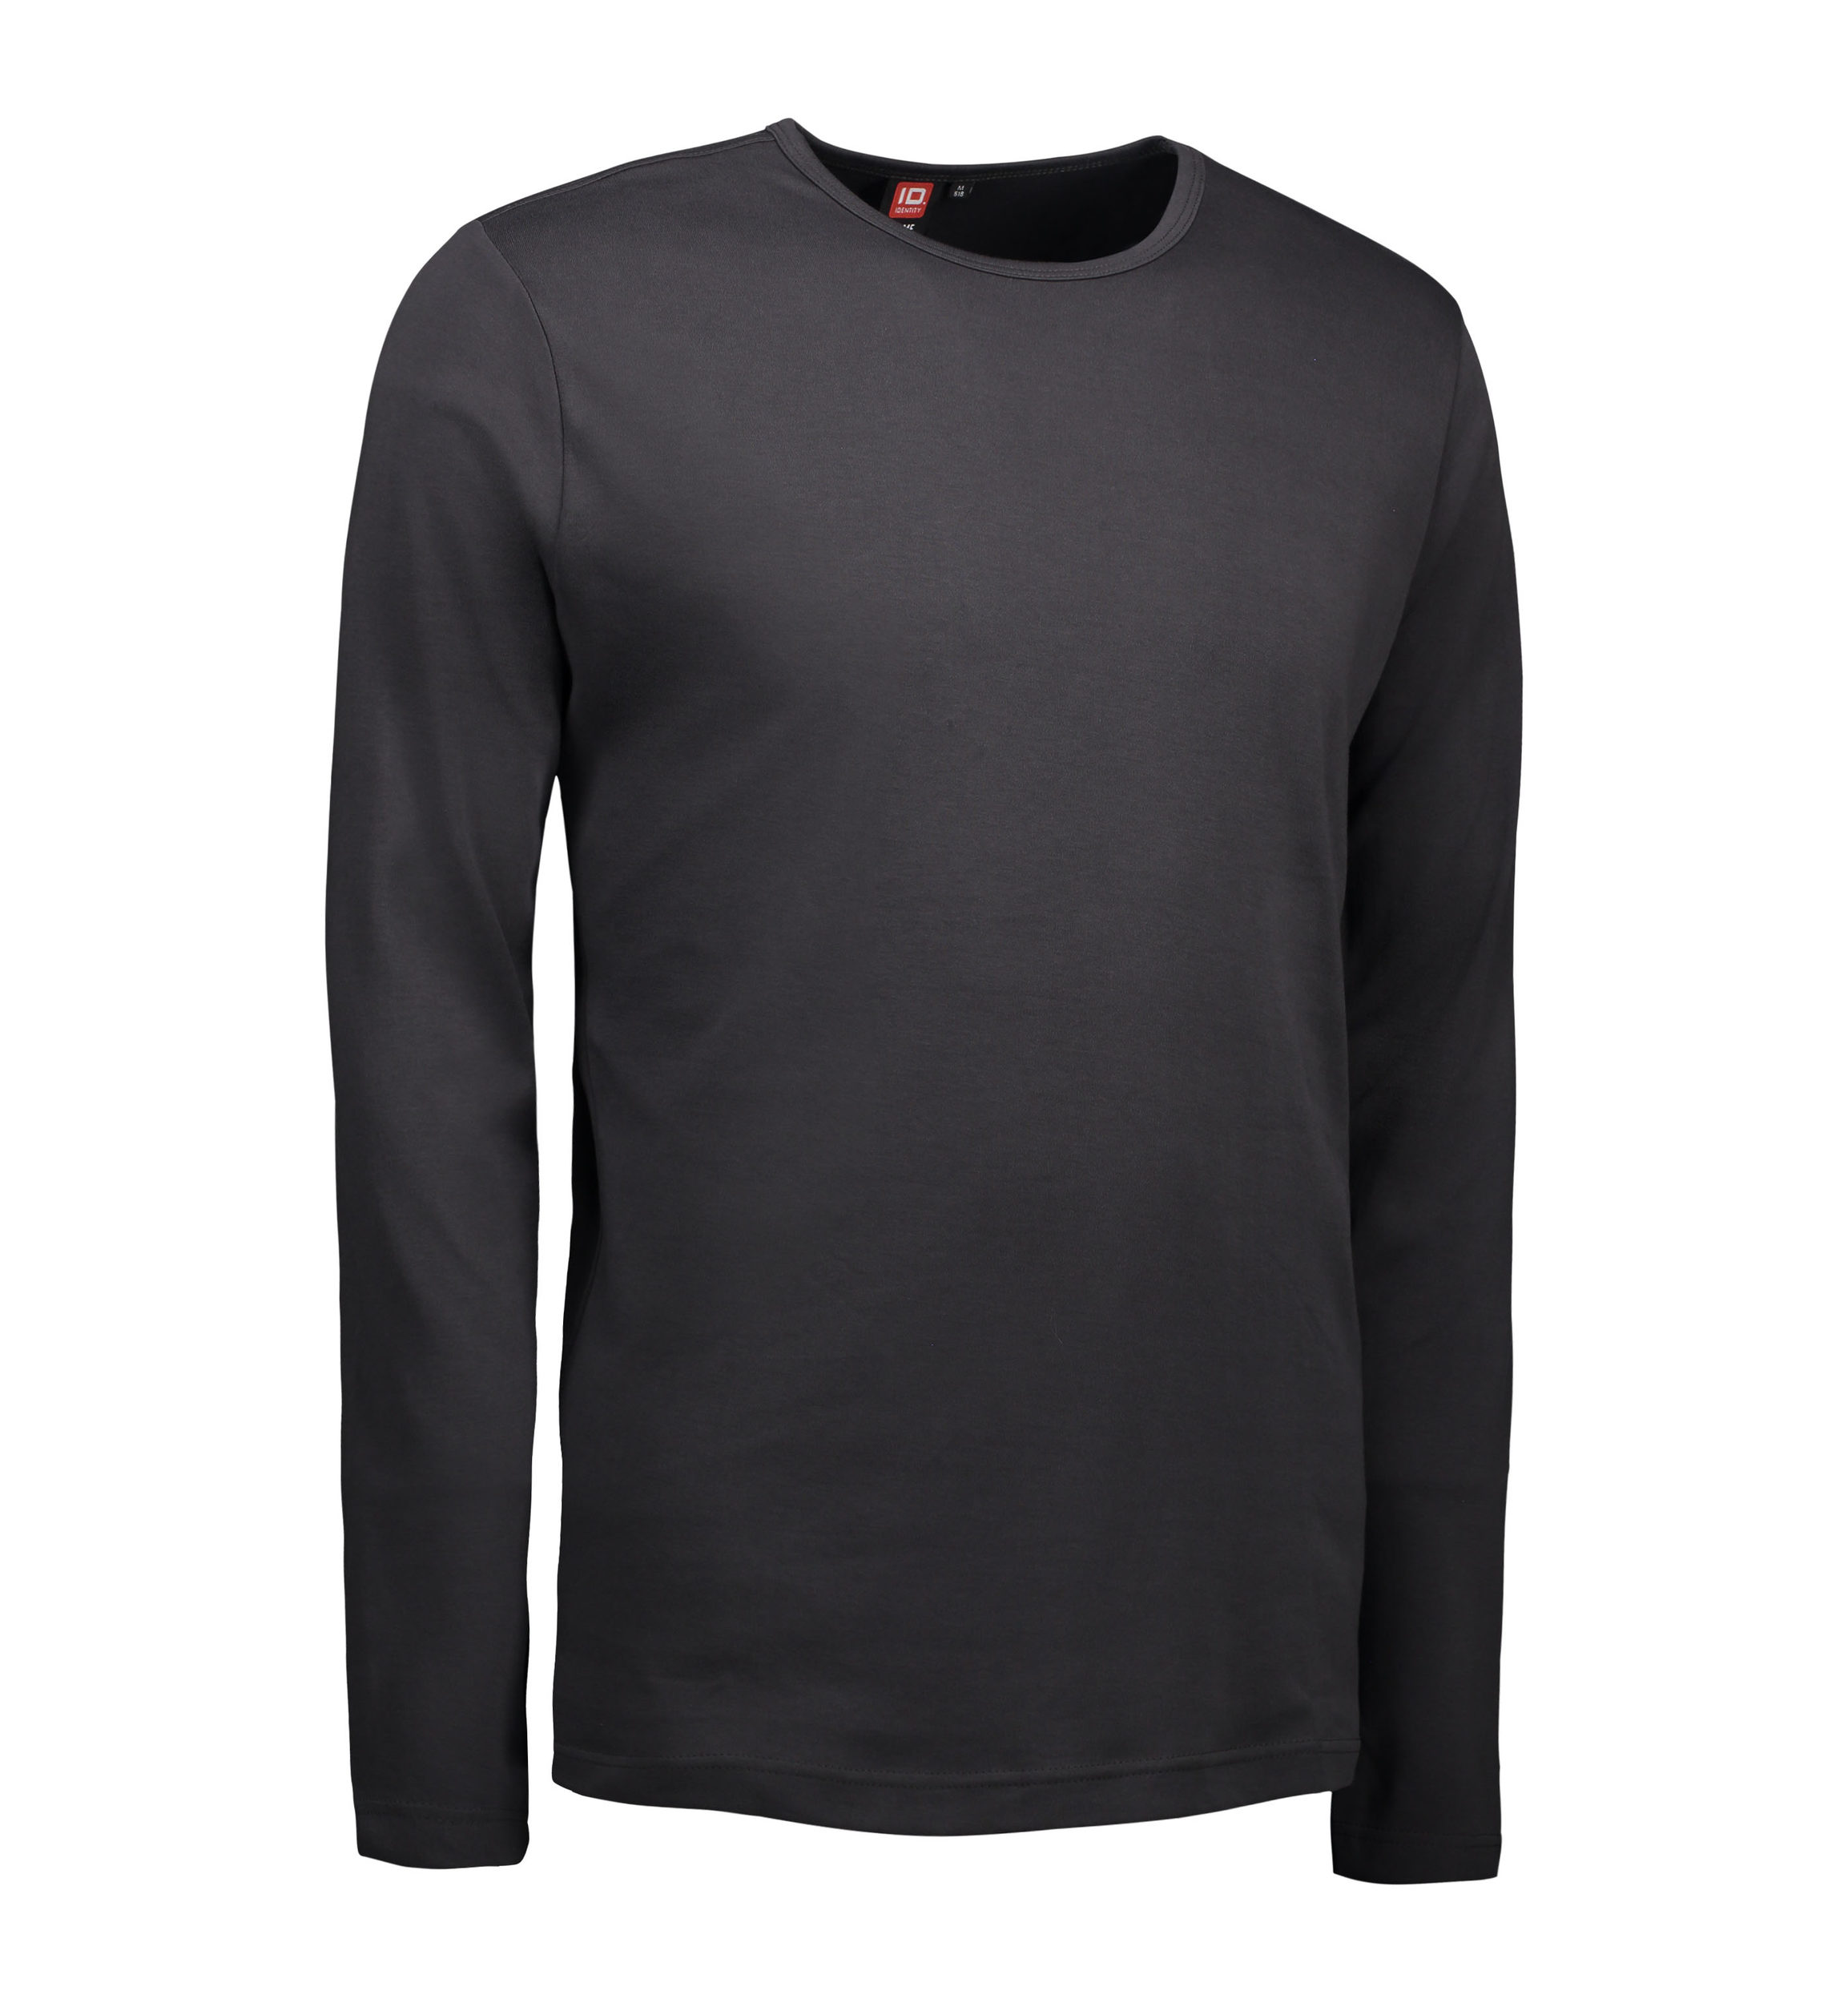 8: Koks grå langærmet t-shirt til mænd - 3XL